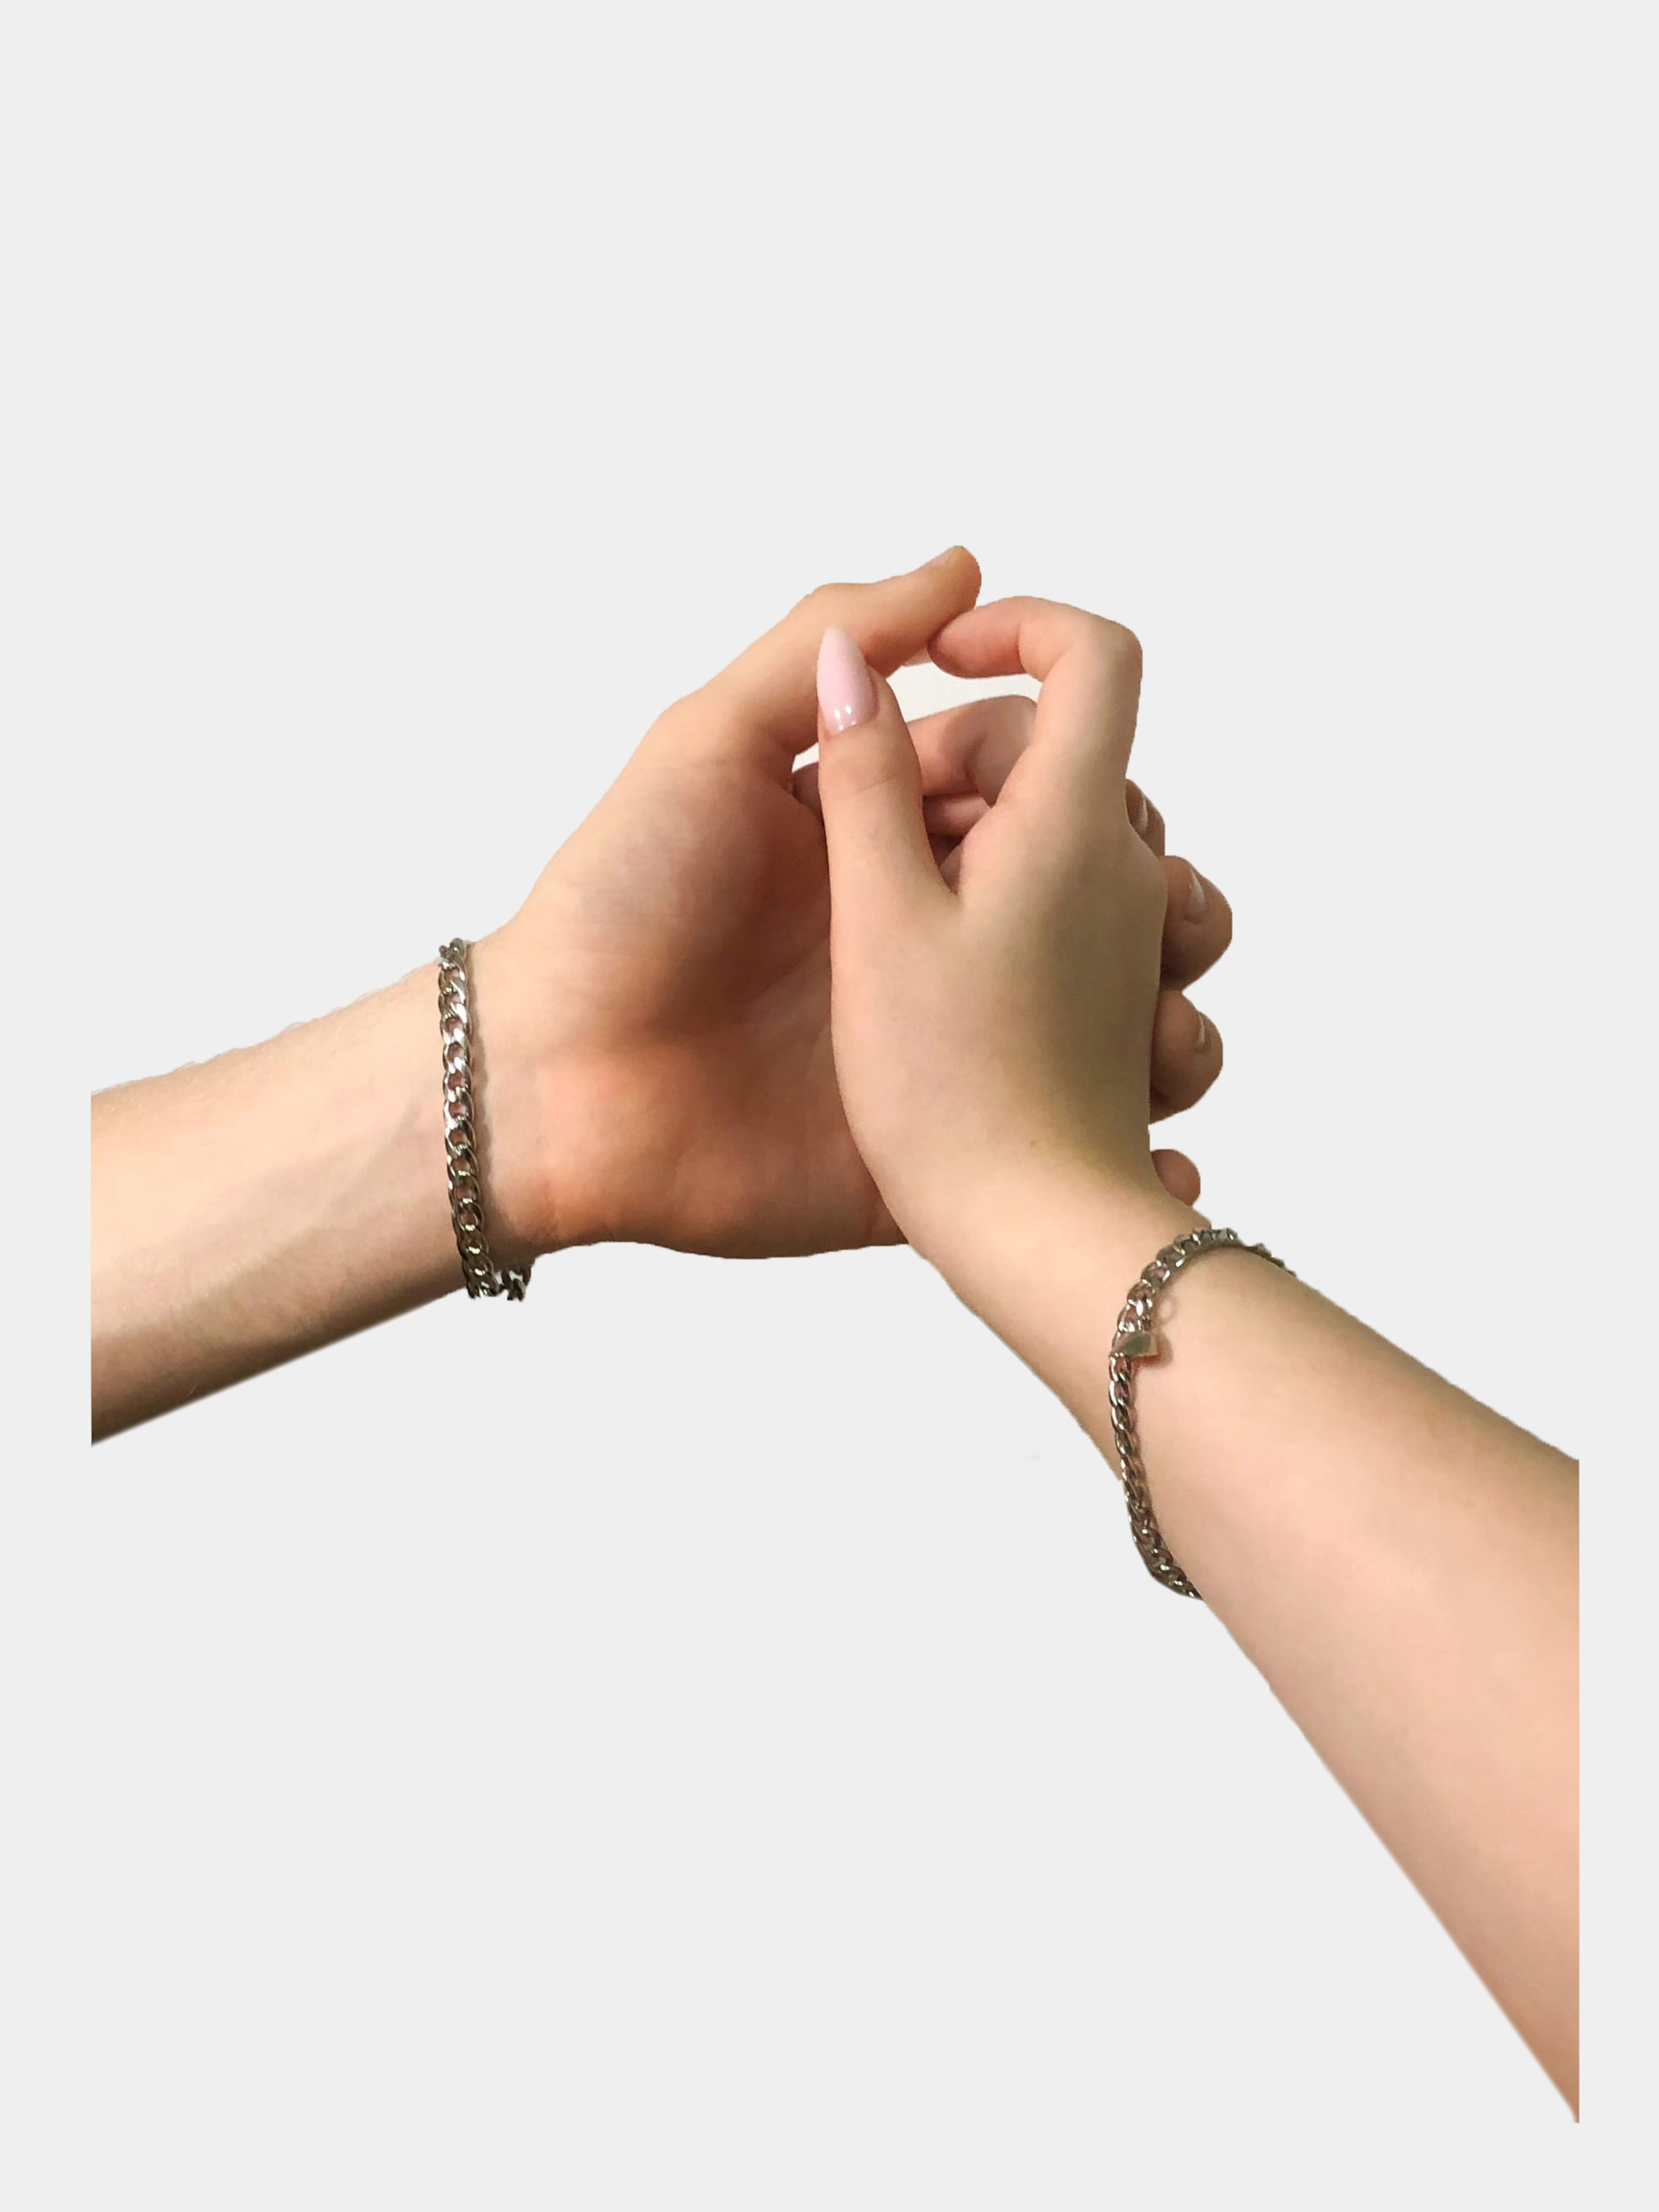 Парные браслеты с сердечком на магните, парная цепь на магнитах купить поцене 1199 ₽ в интернет-магазине KazanExpress